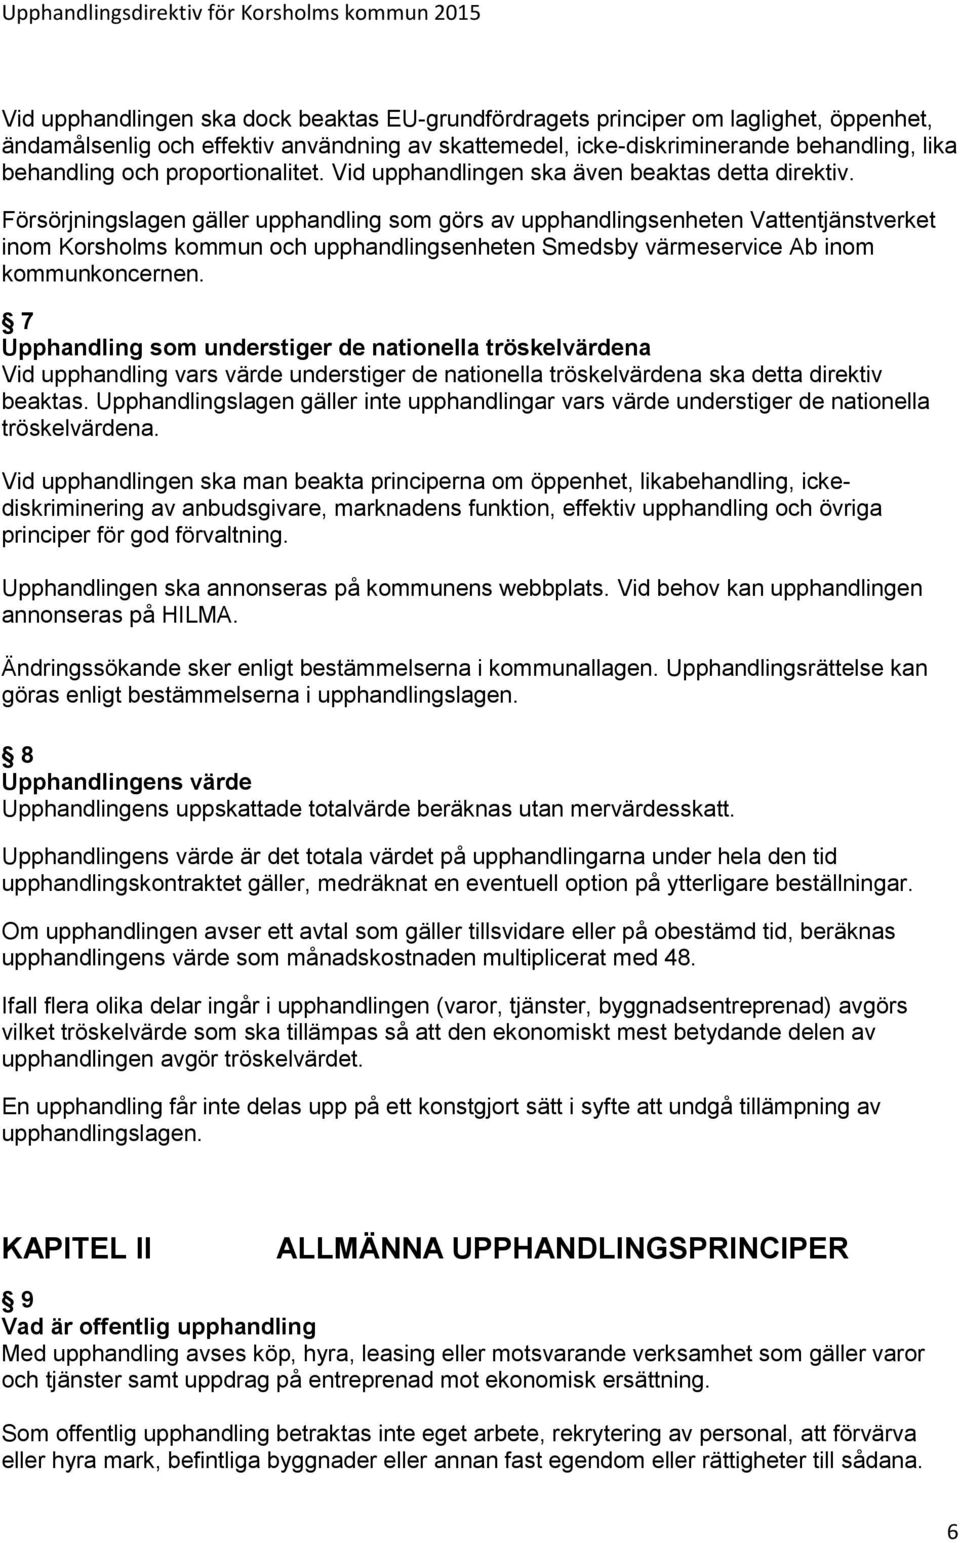 Försörjningslagen gäller upphandling som görs av upphandlingsenheten Vattentjänstverket inom Korsholms kommun och upphandlingsenheten Smedsby värmeservice Ab inom kommunkoncernen.